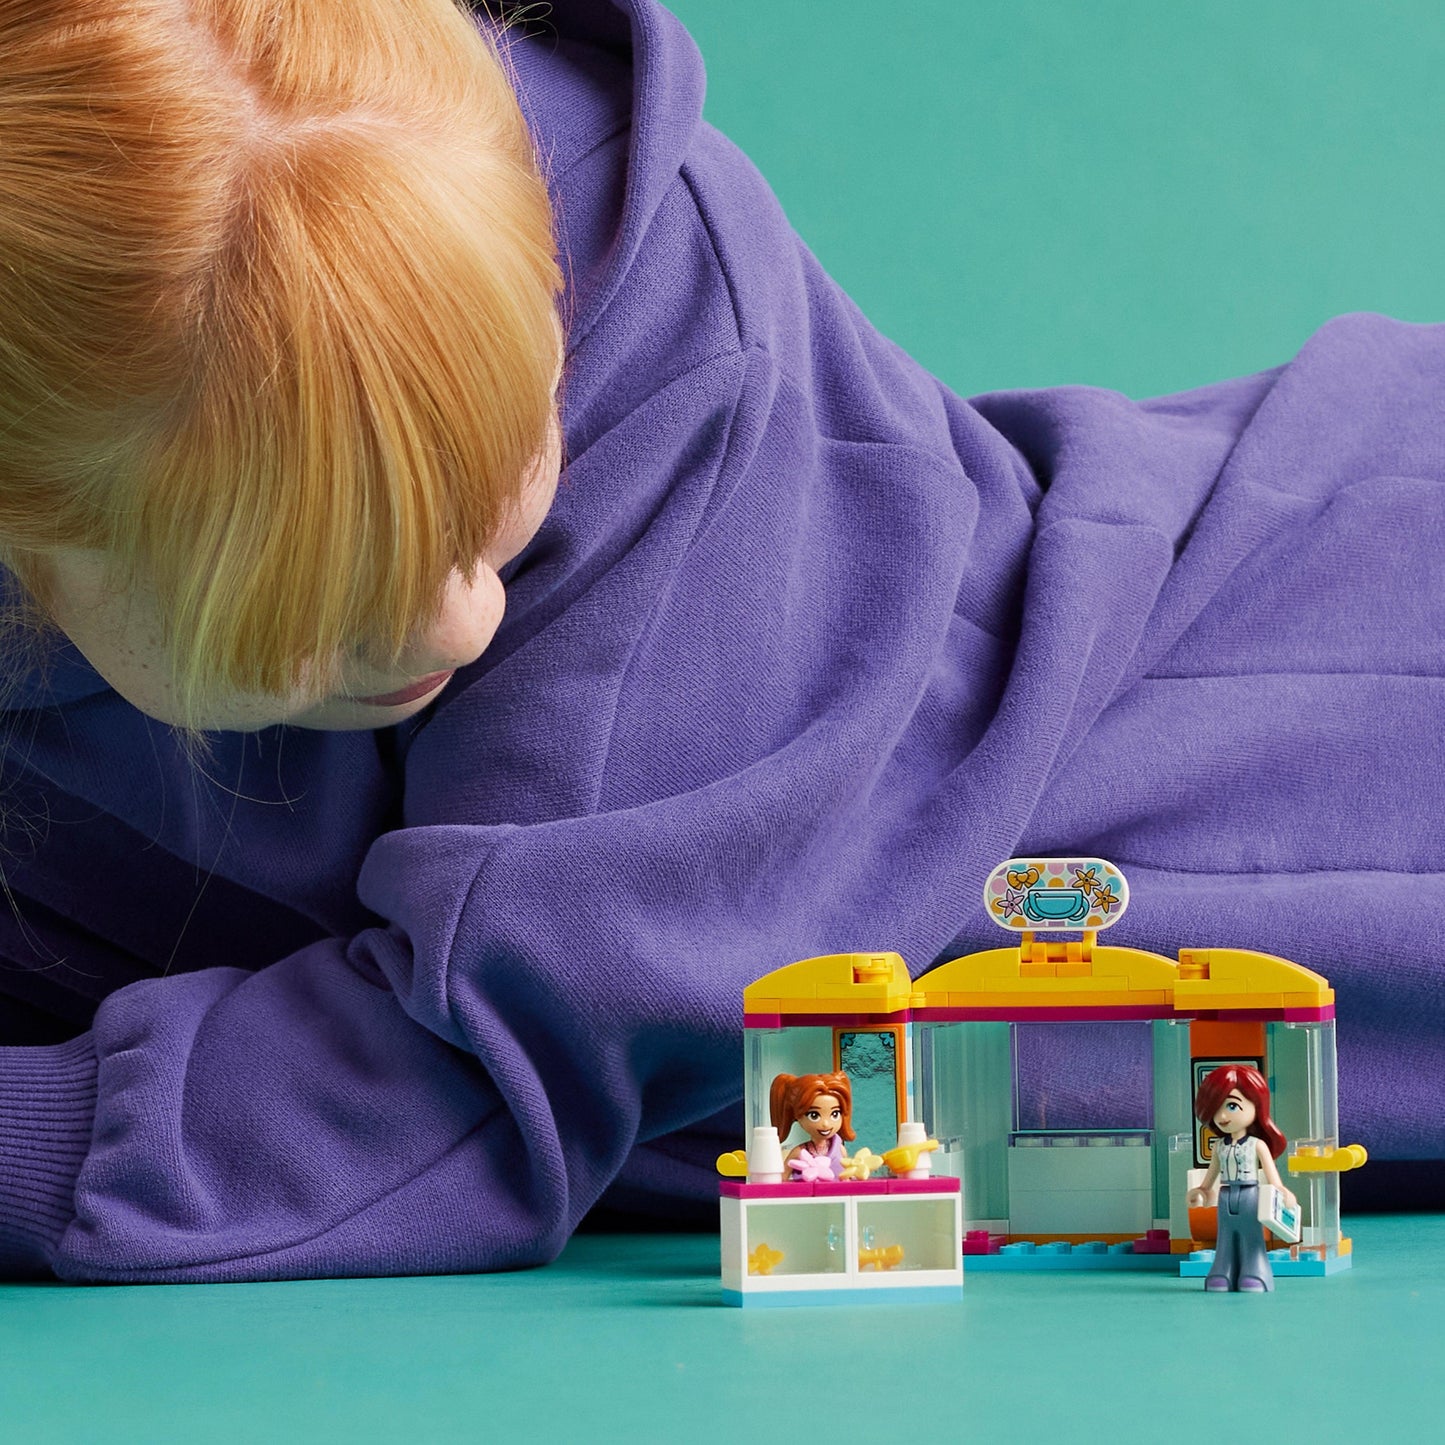 LEGO De kleine accessoire winkel 42608 Friends | 2TTOYS ✓ Official shop<br>